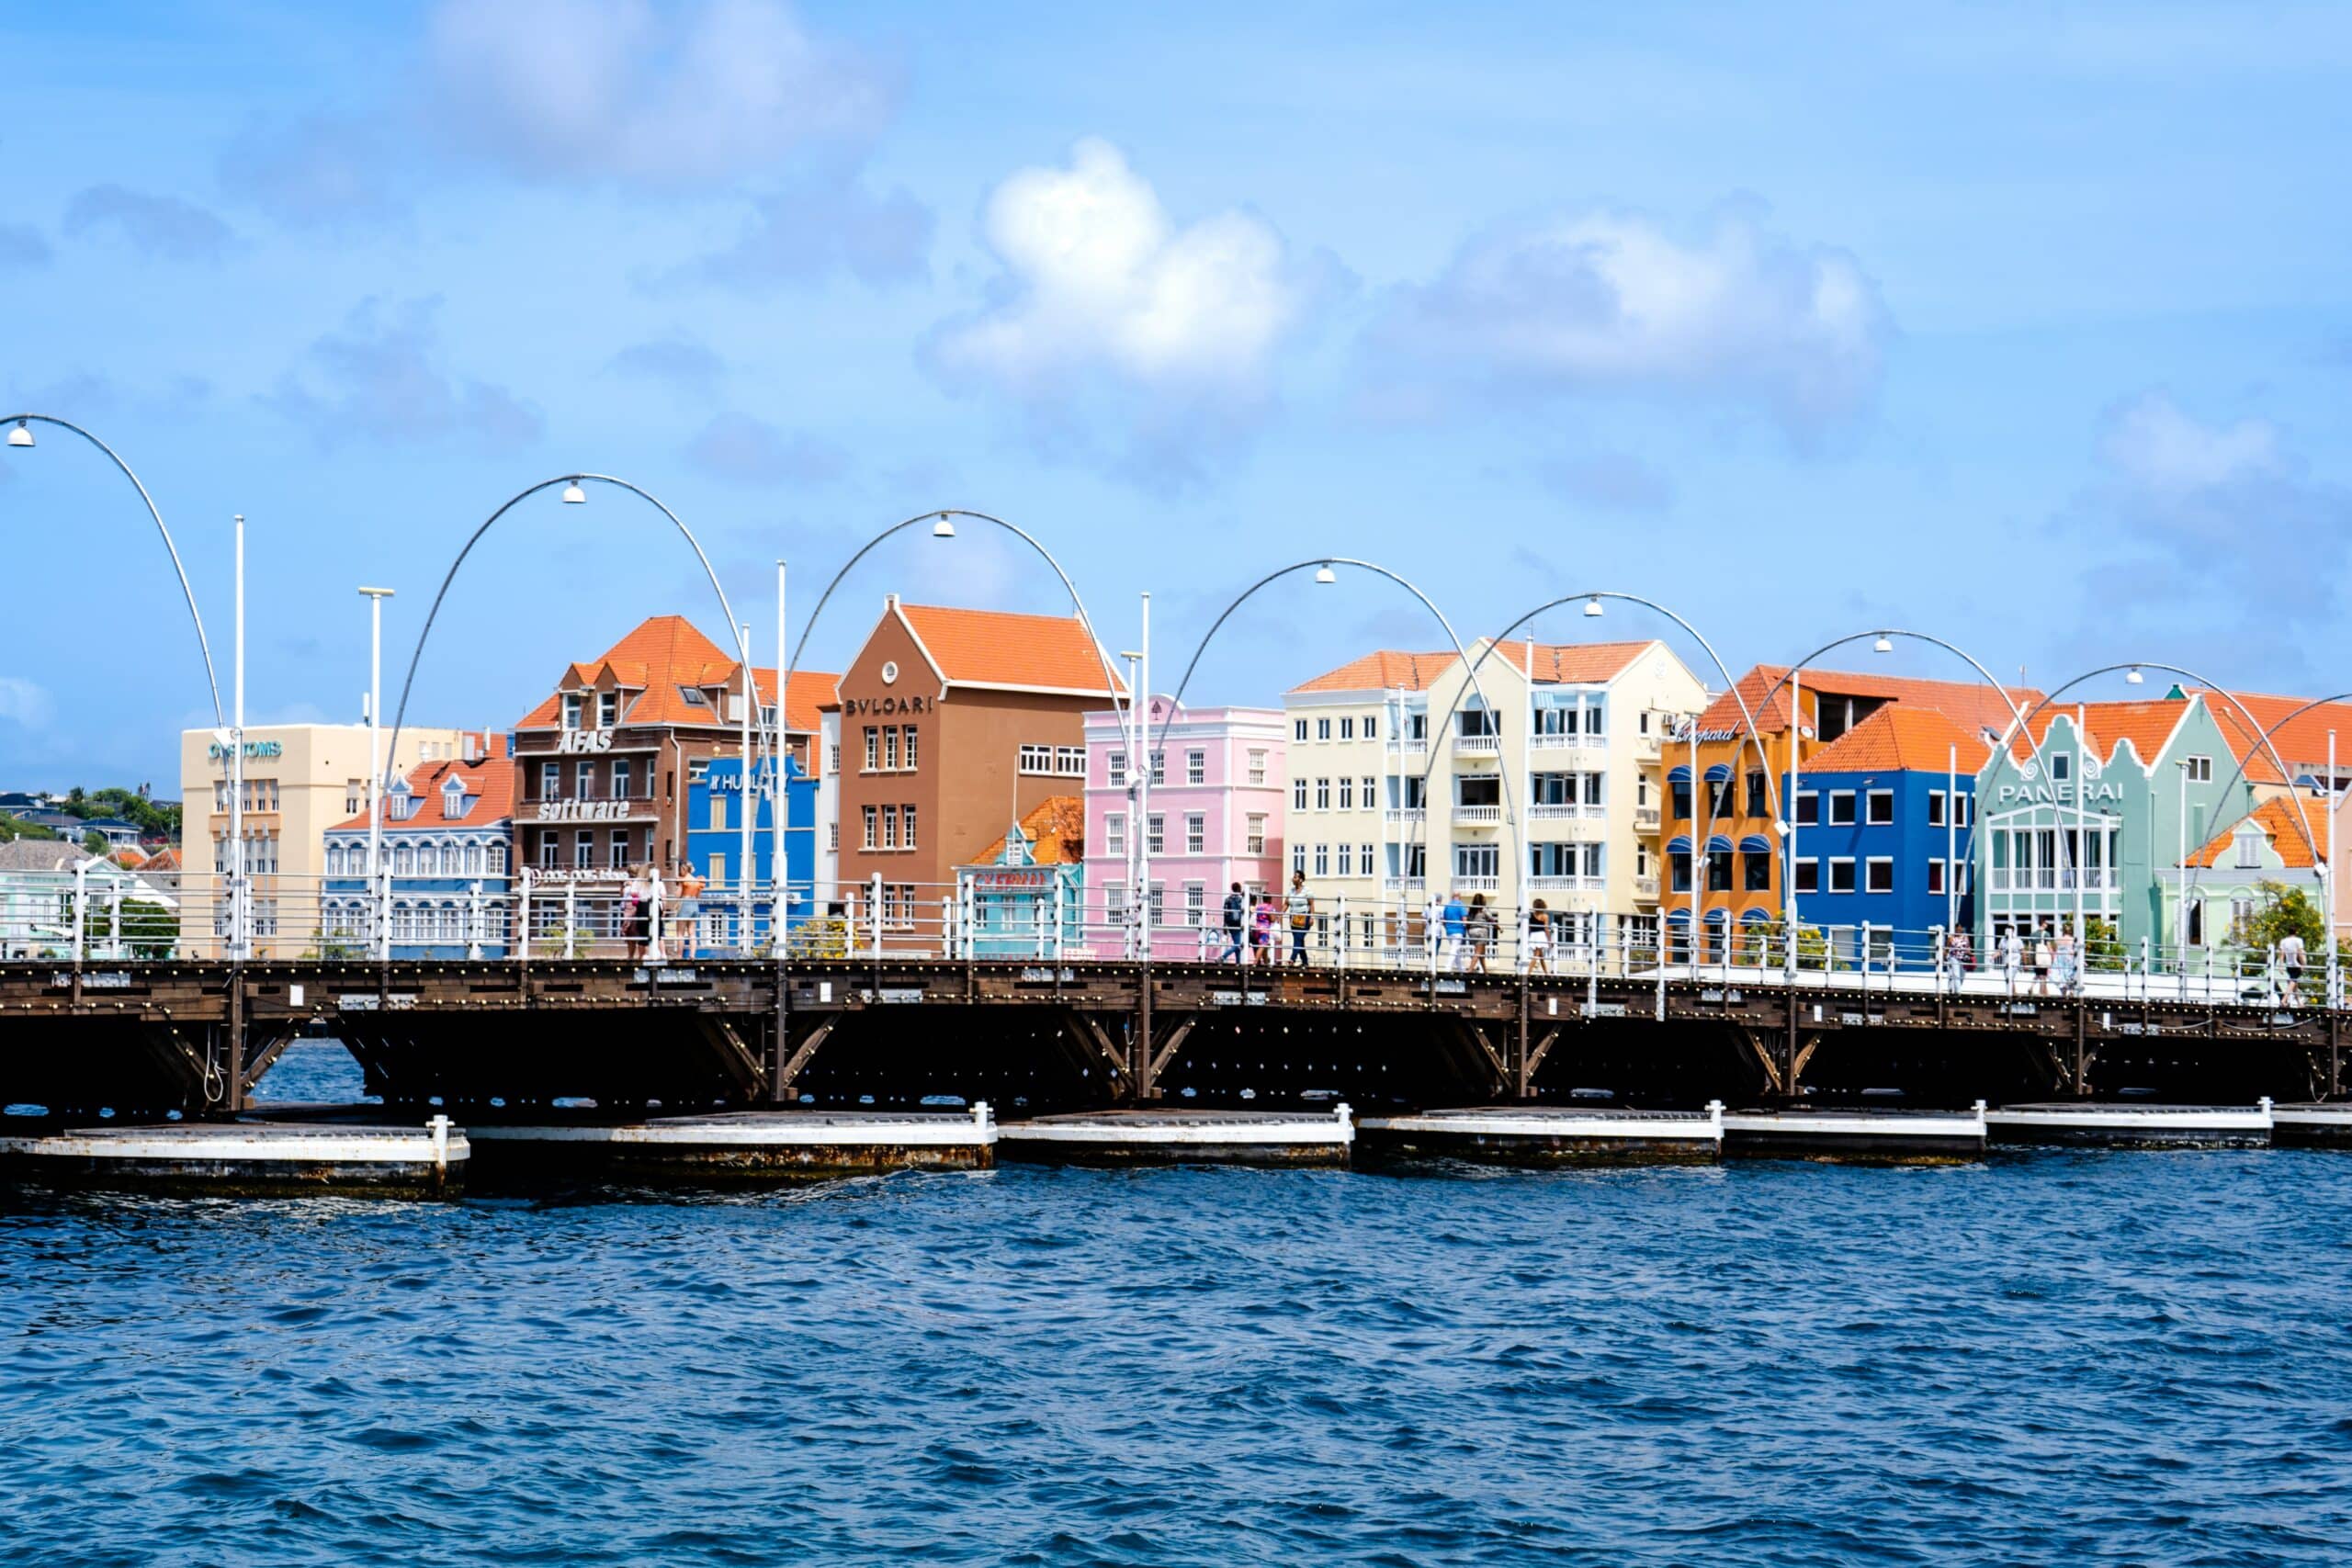 ponte de pedestre em frente as casas coloridas de willemstad